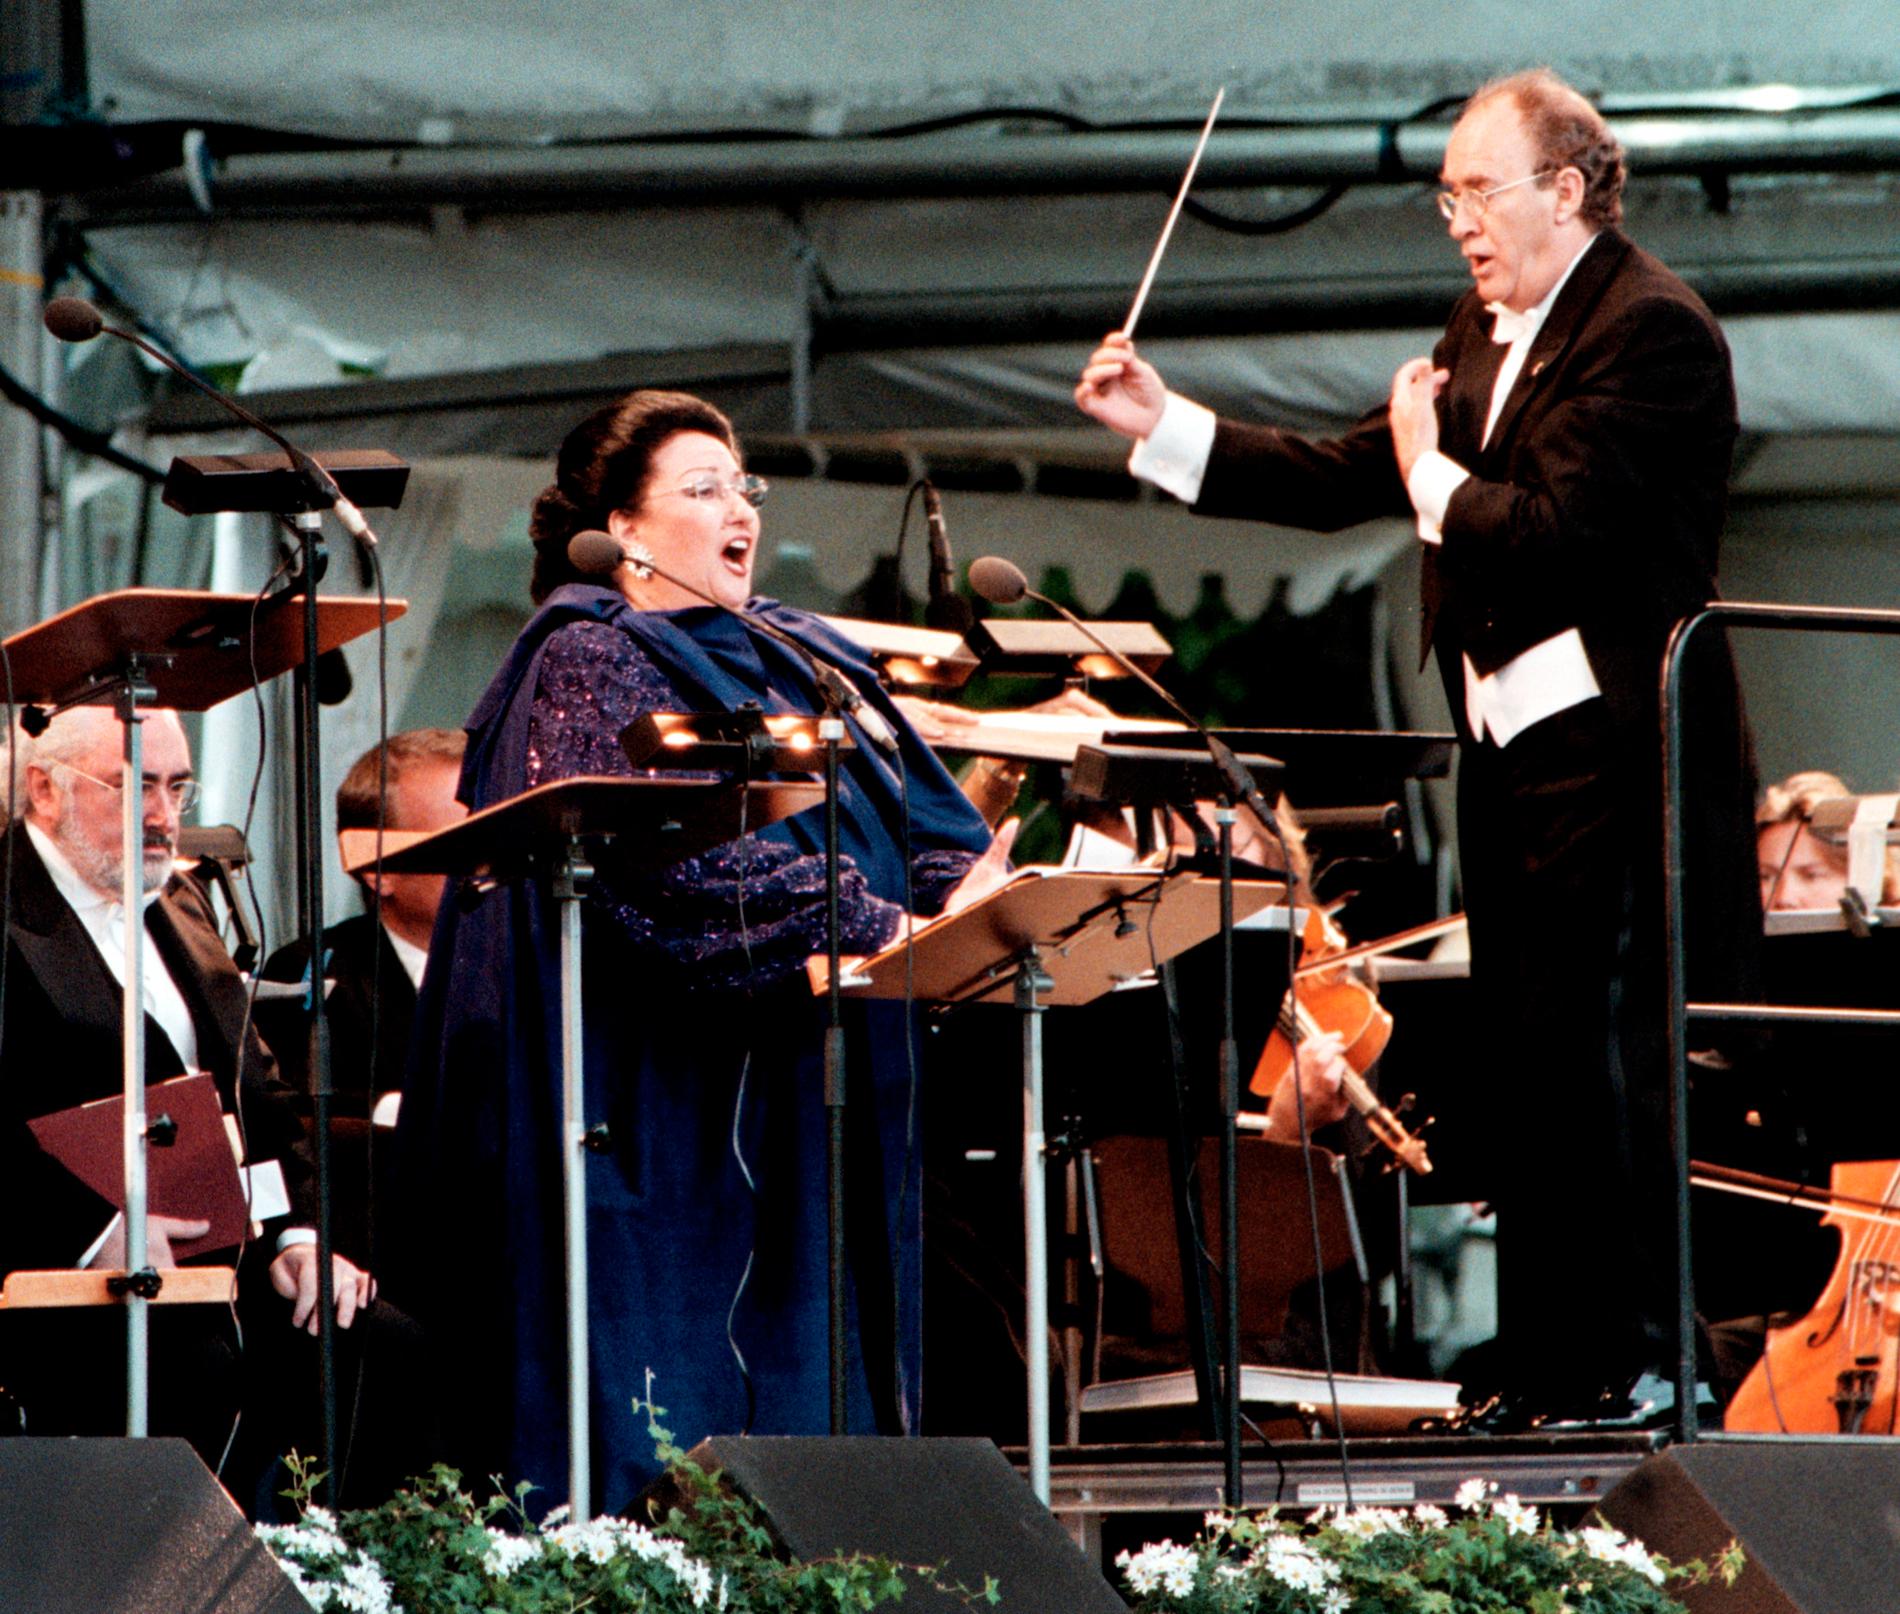 Montserrat Caballé upptr äder vid Ulriksdals slott, 13 juni 2000.